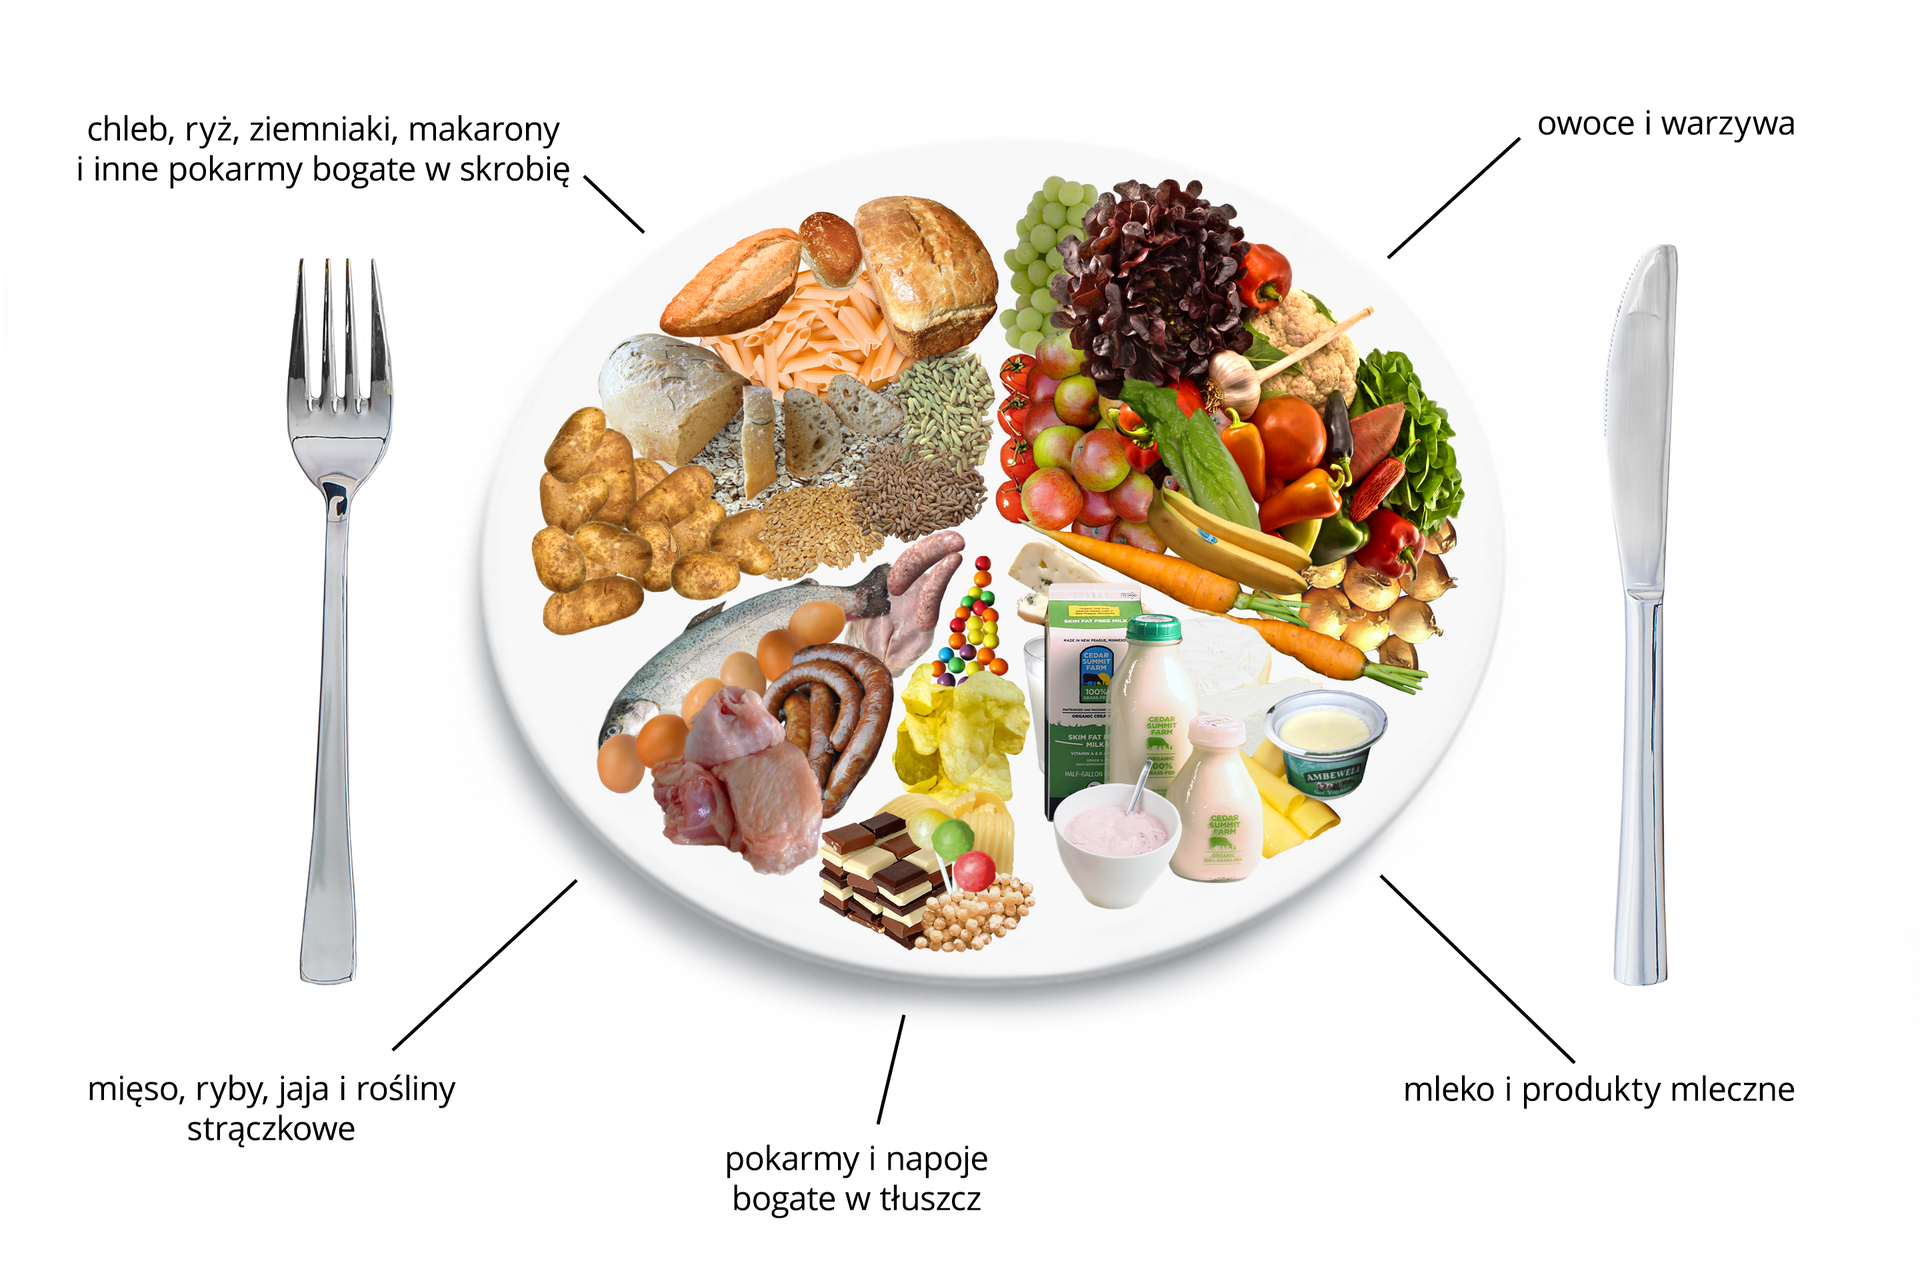 Schemat przedstawiający talerz zdrowego żywienia z różnymi produktami żywnościowymi. Talerz podzielono na pięć nierównych części, odzwierciedlających proporcje pokarmów, jakie powinny wchodzić w skład naszej diety. Największą część talerza stanowią: zboża, chleb, ziemniaki i pokarmy bogate w skrobię. Następna równie duża część, to owoce i warzywa. Kolejna mniejsza niż ćwiartka talerza to, nabiał. Następna mięso, ryby, jaja i rośliny strączkowe. Najmniejsza cześć talerza, to pokarmy i napoje bogate w tłuszcz.